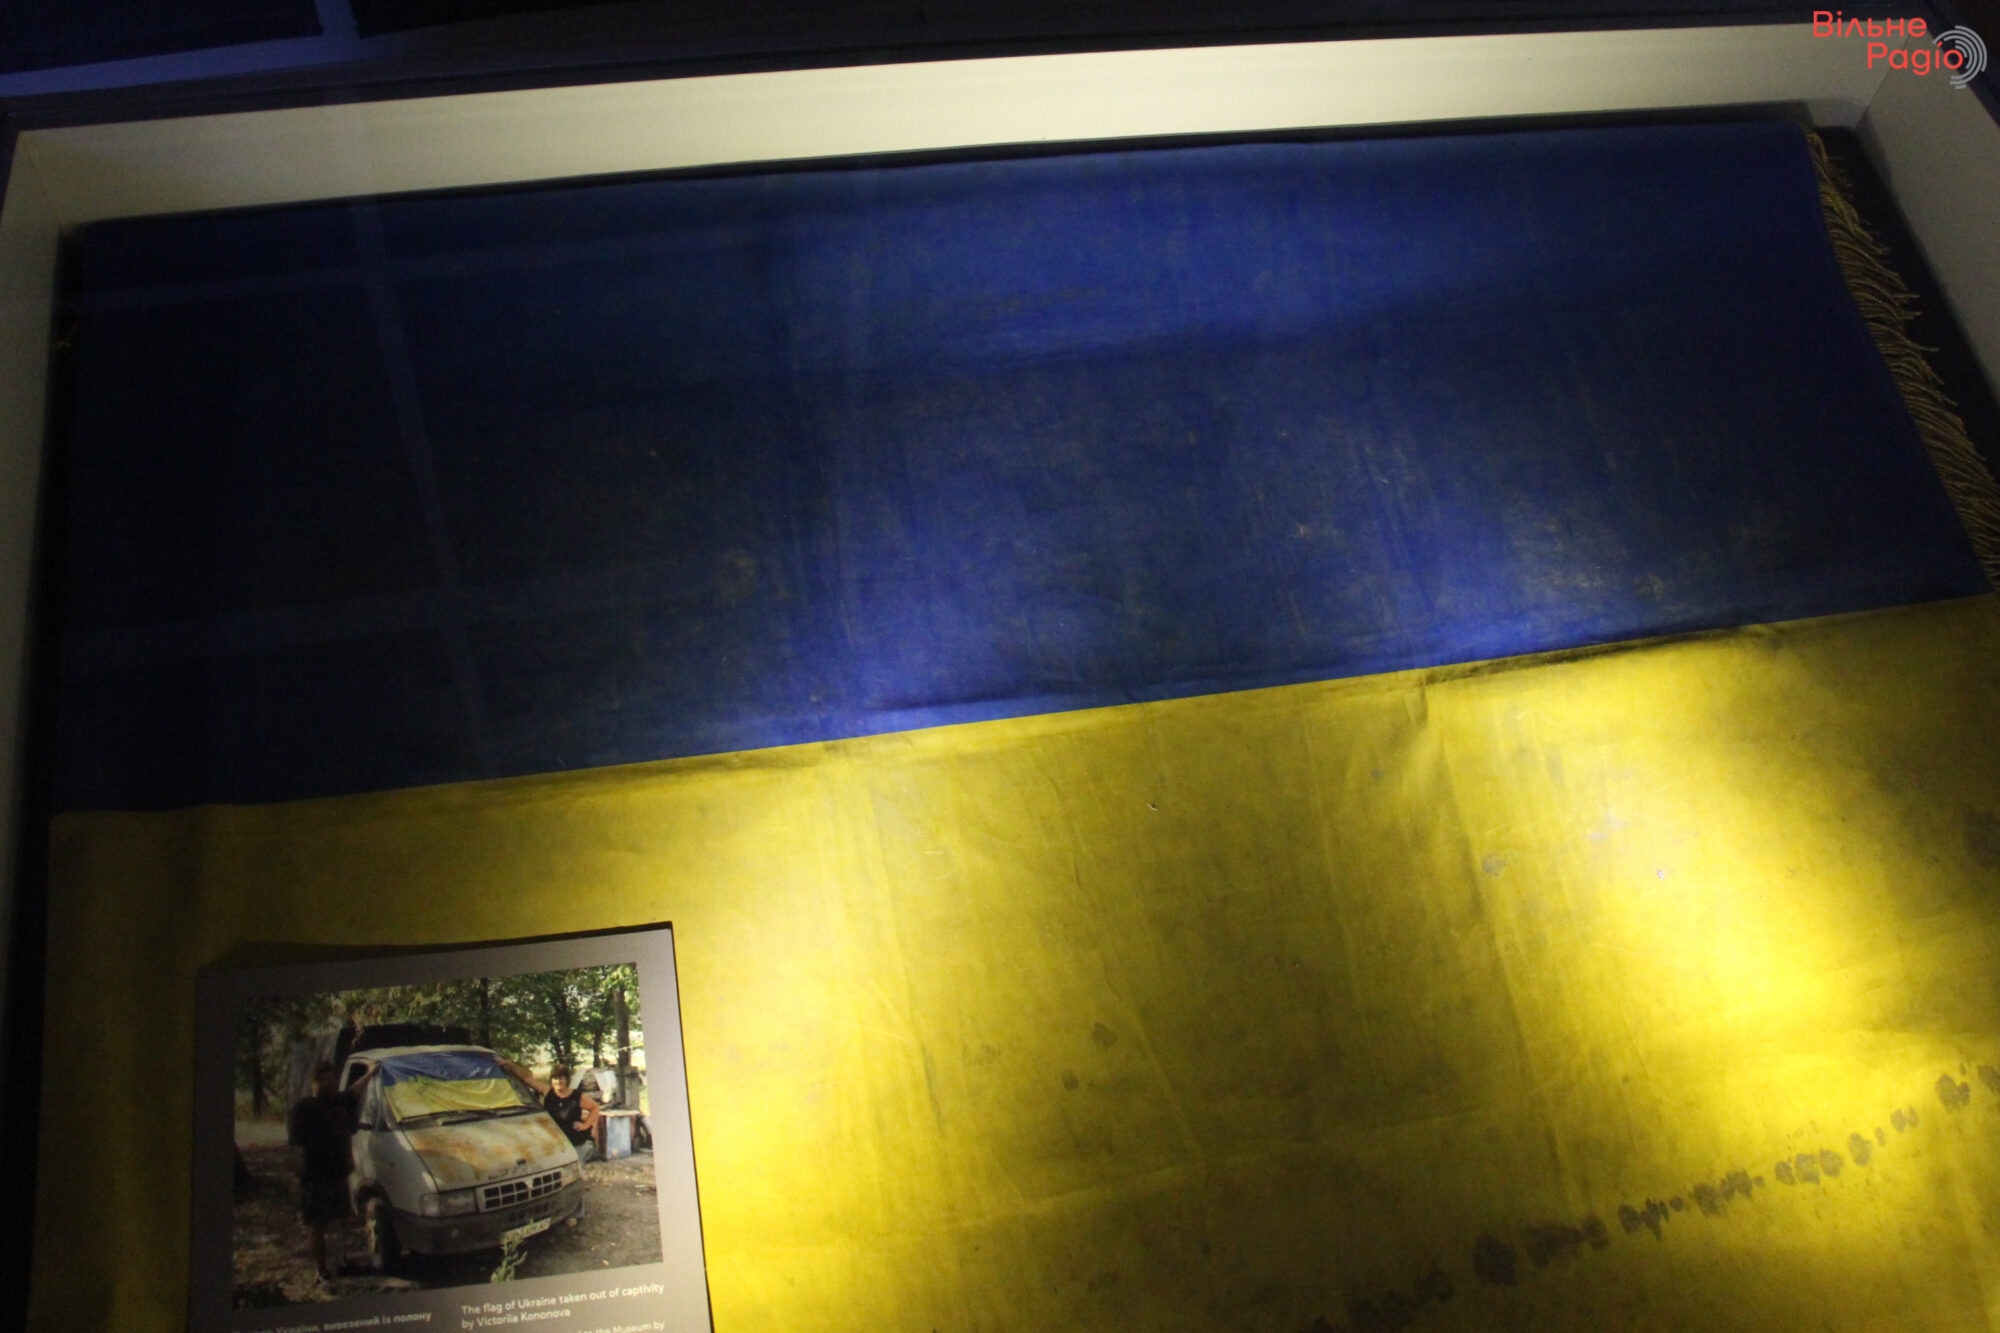 “Флаги Независимости”: фотоподборка государственных флагов, которые навсегда останутся частью украинской истории 1